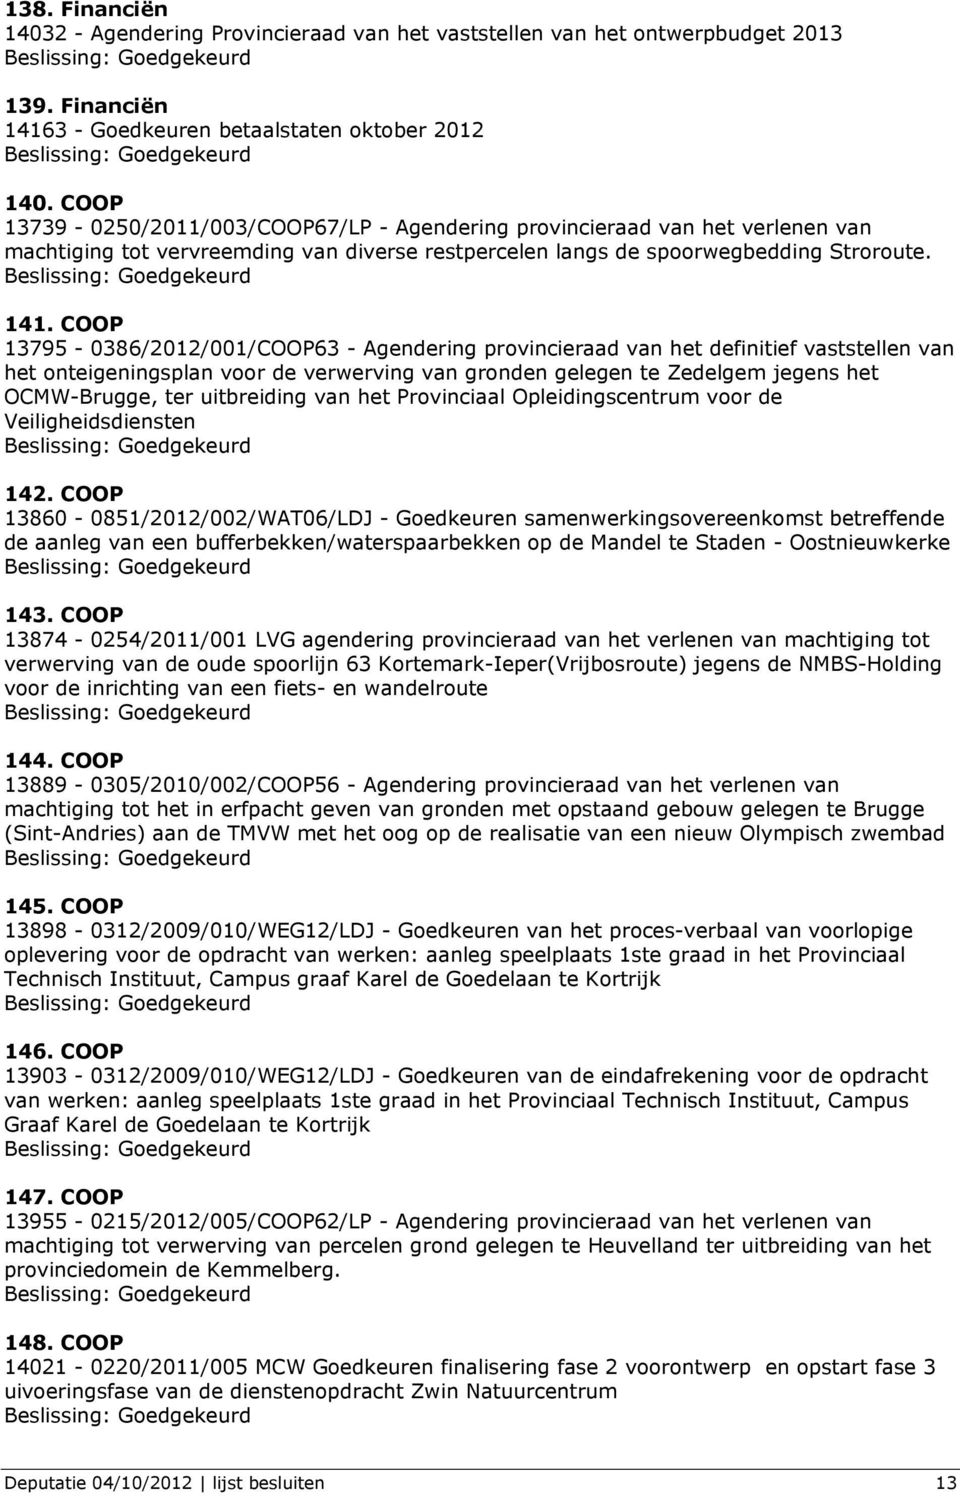 COOP 13795-0386/2012/001/COOP63 - Agendering provincieraad van het definitief vaststellen van het onteigeningsplan voor de verwerving van gronden gelegen te Zedelgem jegens het OCMW-Brugge, ter